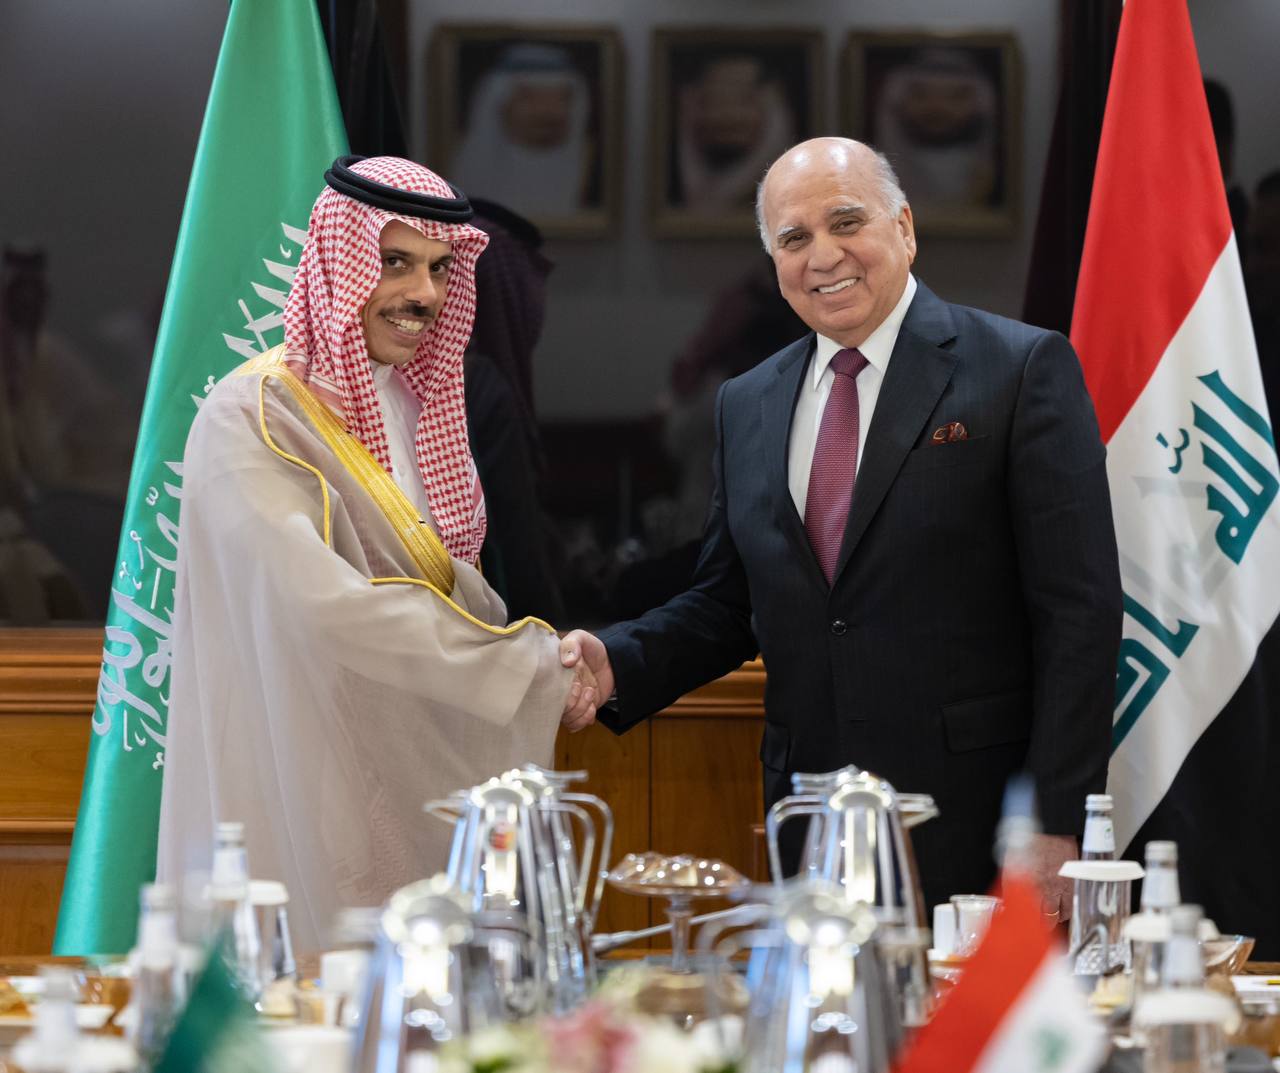 وزيرا-خارجية-العراق-والسعودية-يرأسان-الإجتماع-الرابع-للجنة-السياسية-والأمنية-والعسكرية-المنبثقة-عن-مجلس-التنسيق-السعودي-العراقي